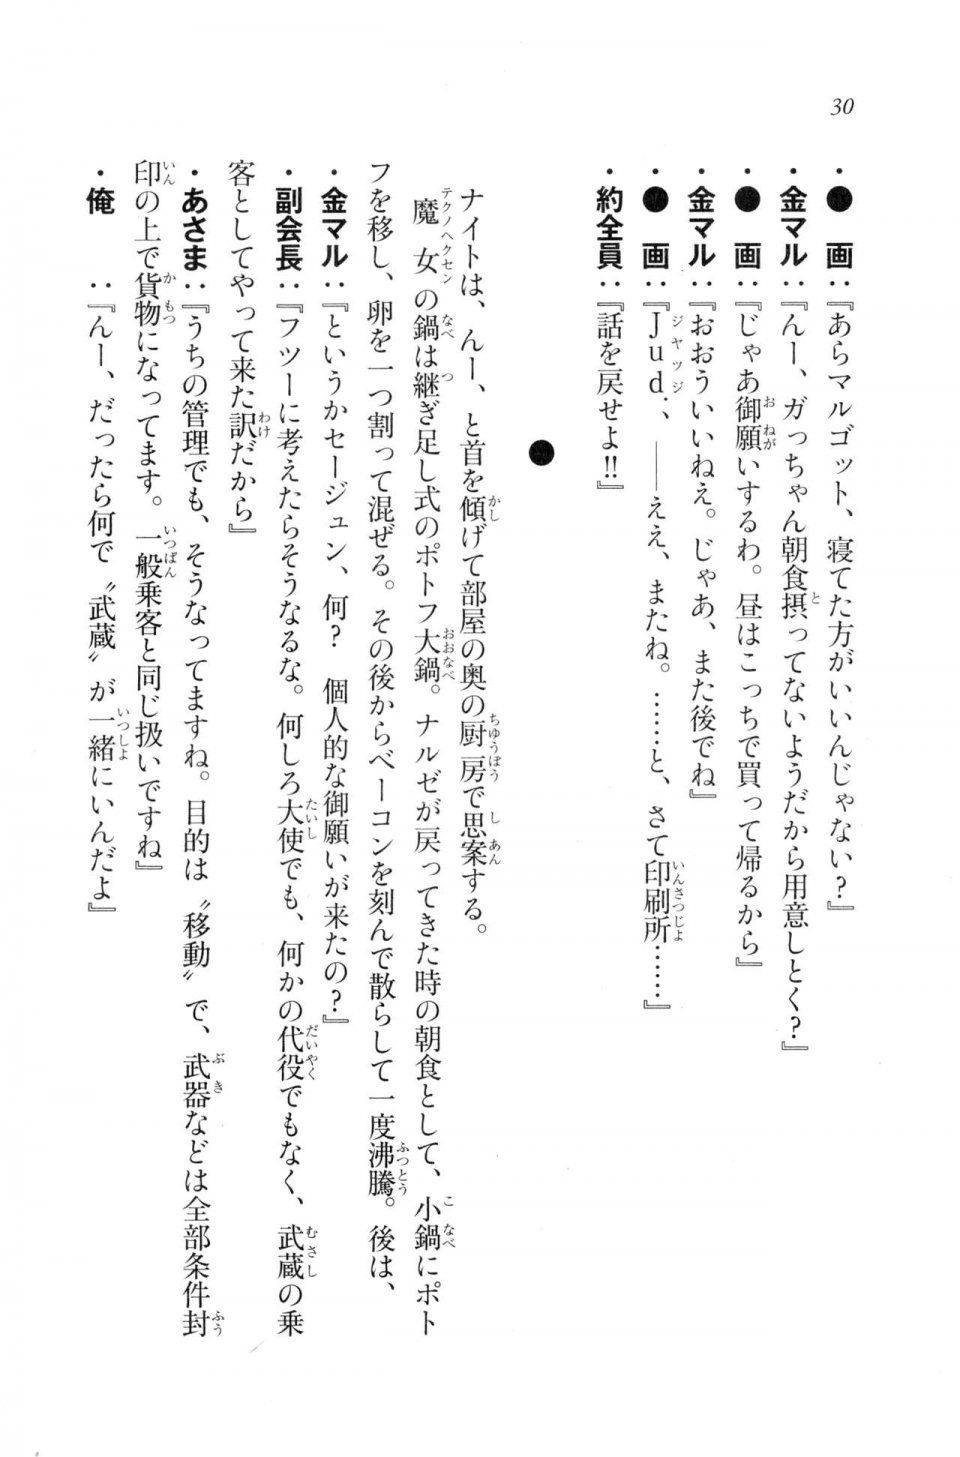 Kyoukai Senjou no Horizon LN Vol 20(8B) - Photo #30